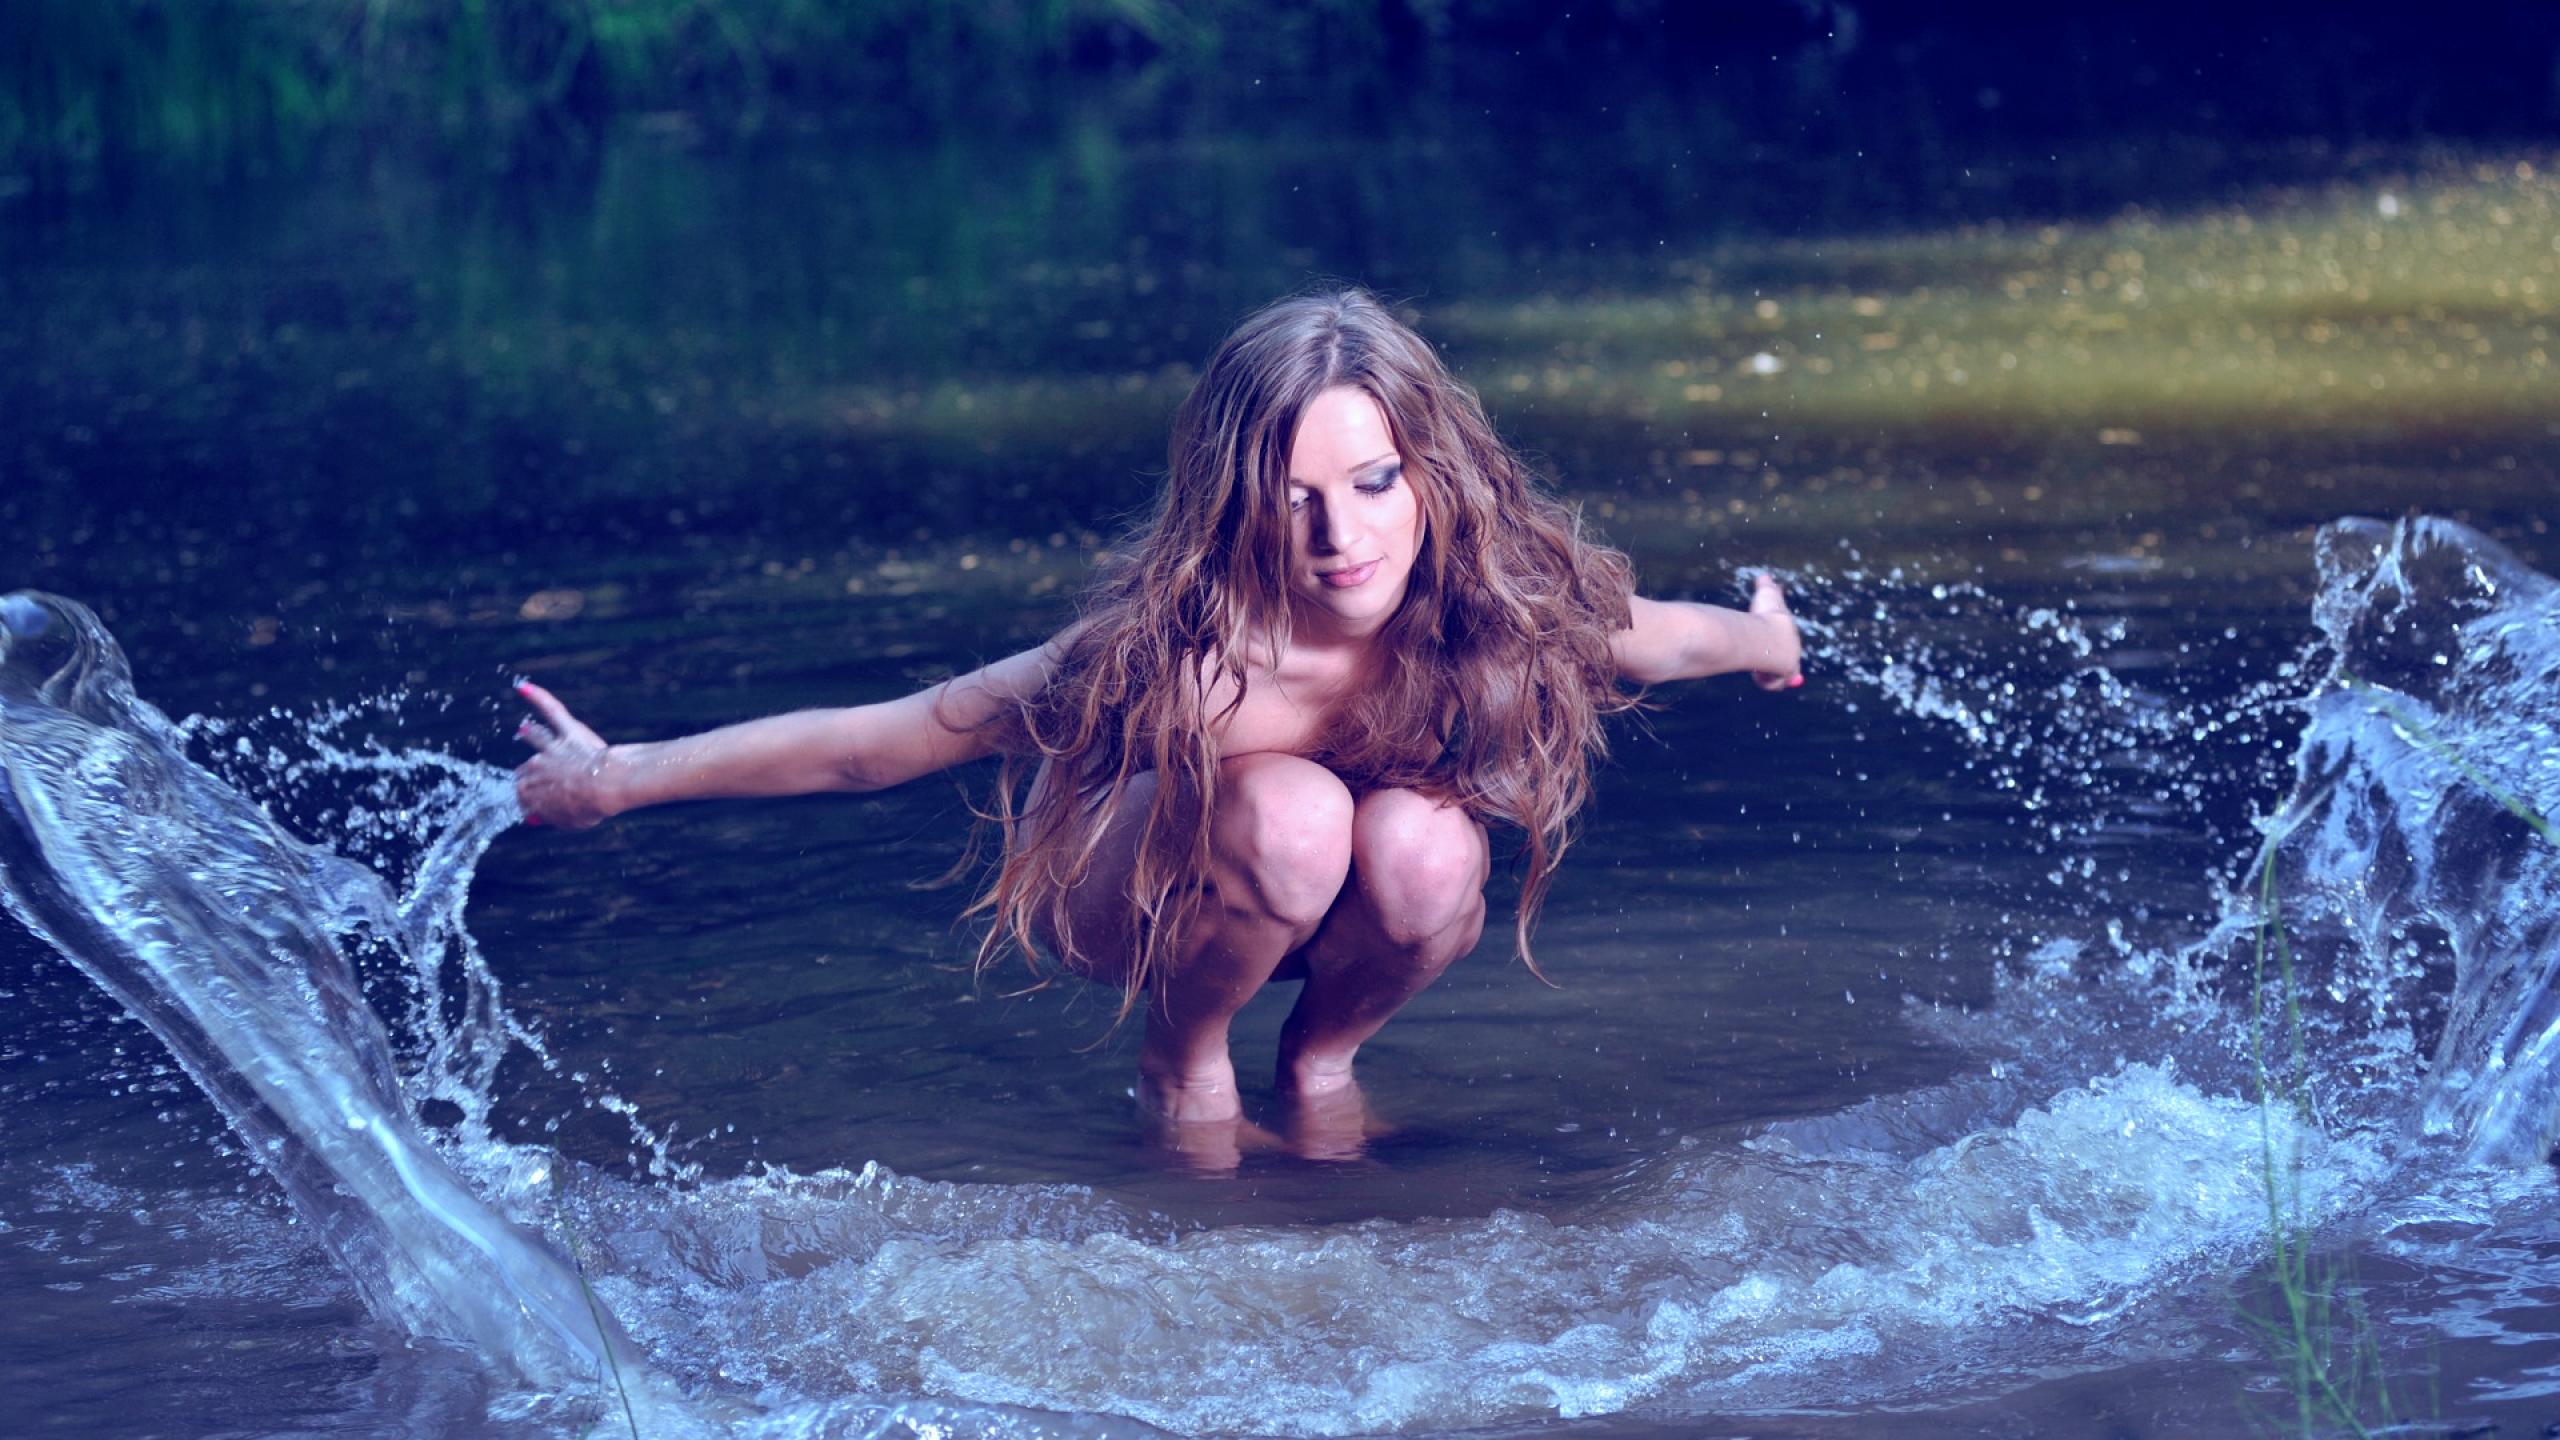 https://jooinn.com/images/girl-in-water-13.jpg